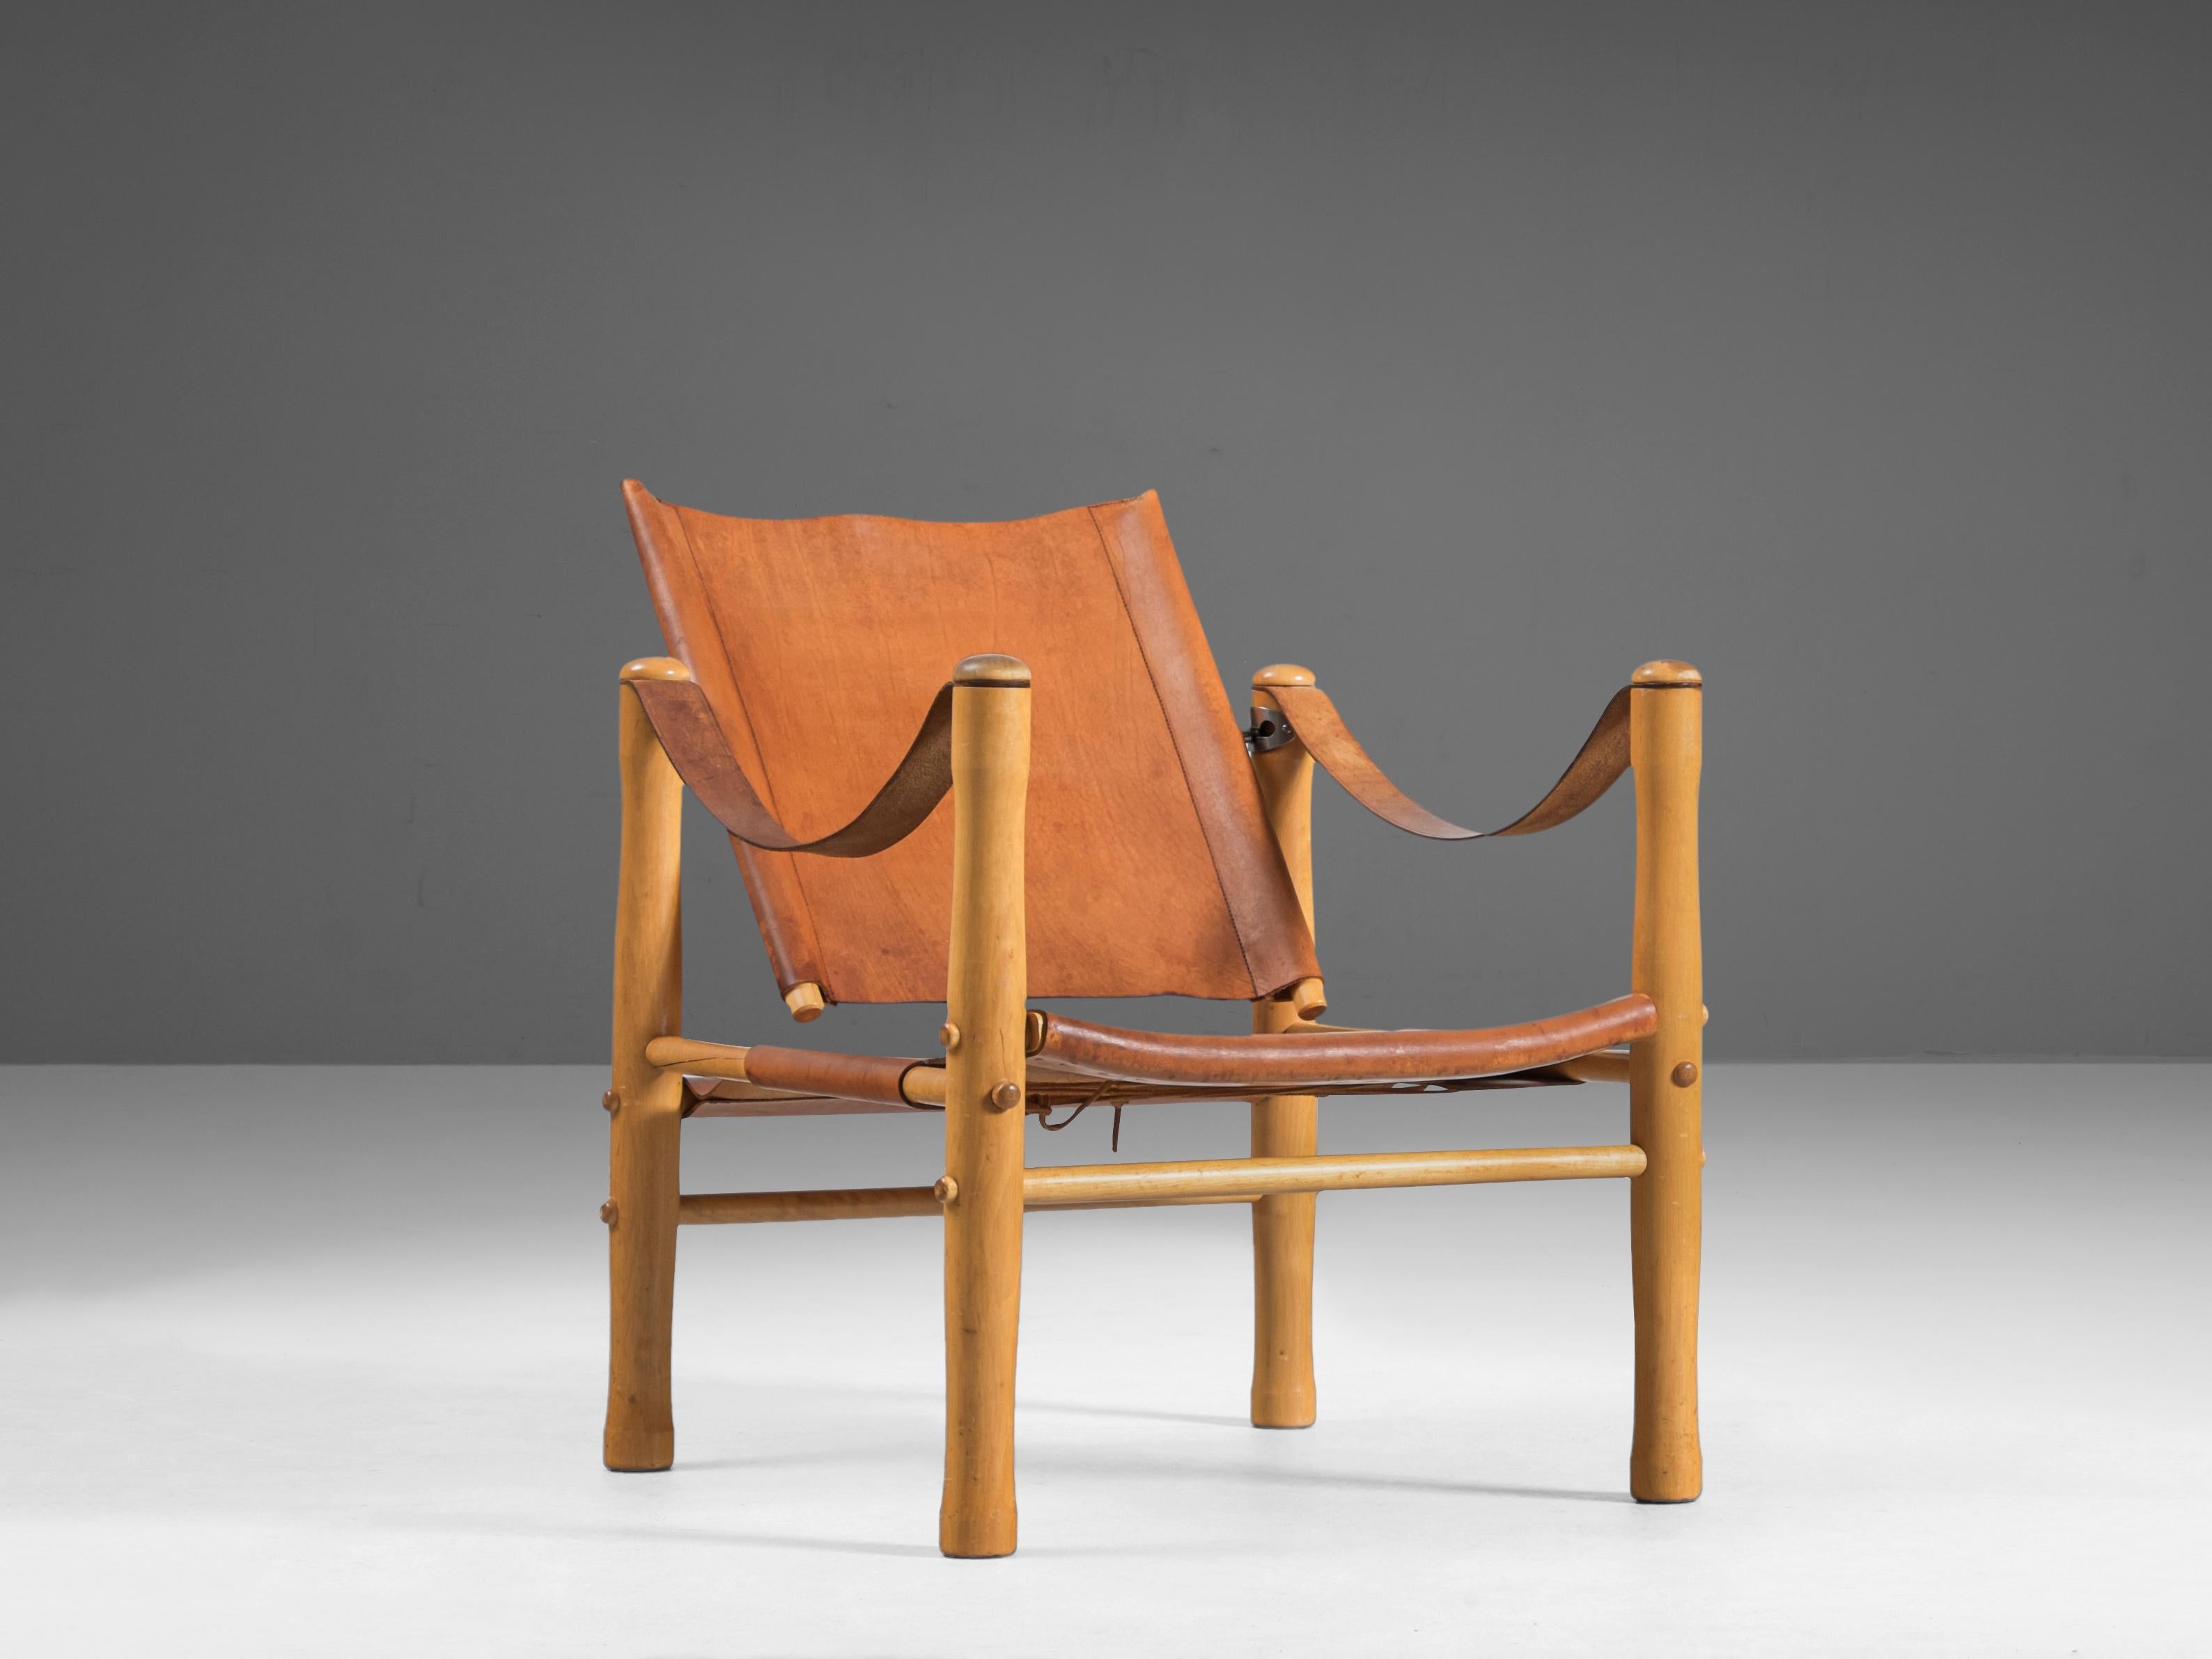 Nordiska Kompaniet, fauteuil, cuir, bouleau, Suède, 1950s

Cette élégante chaise longue safari est fabriquée en cuir naturel brun cognac, qui a développé une belle patine avec le temps, ajoutant au caractère de la chaise. Les lignes bien dessinées